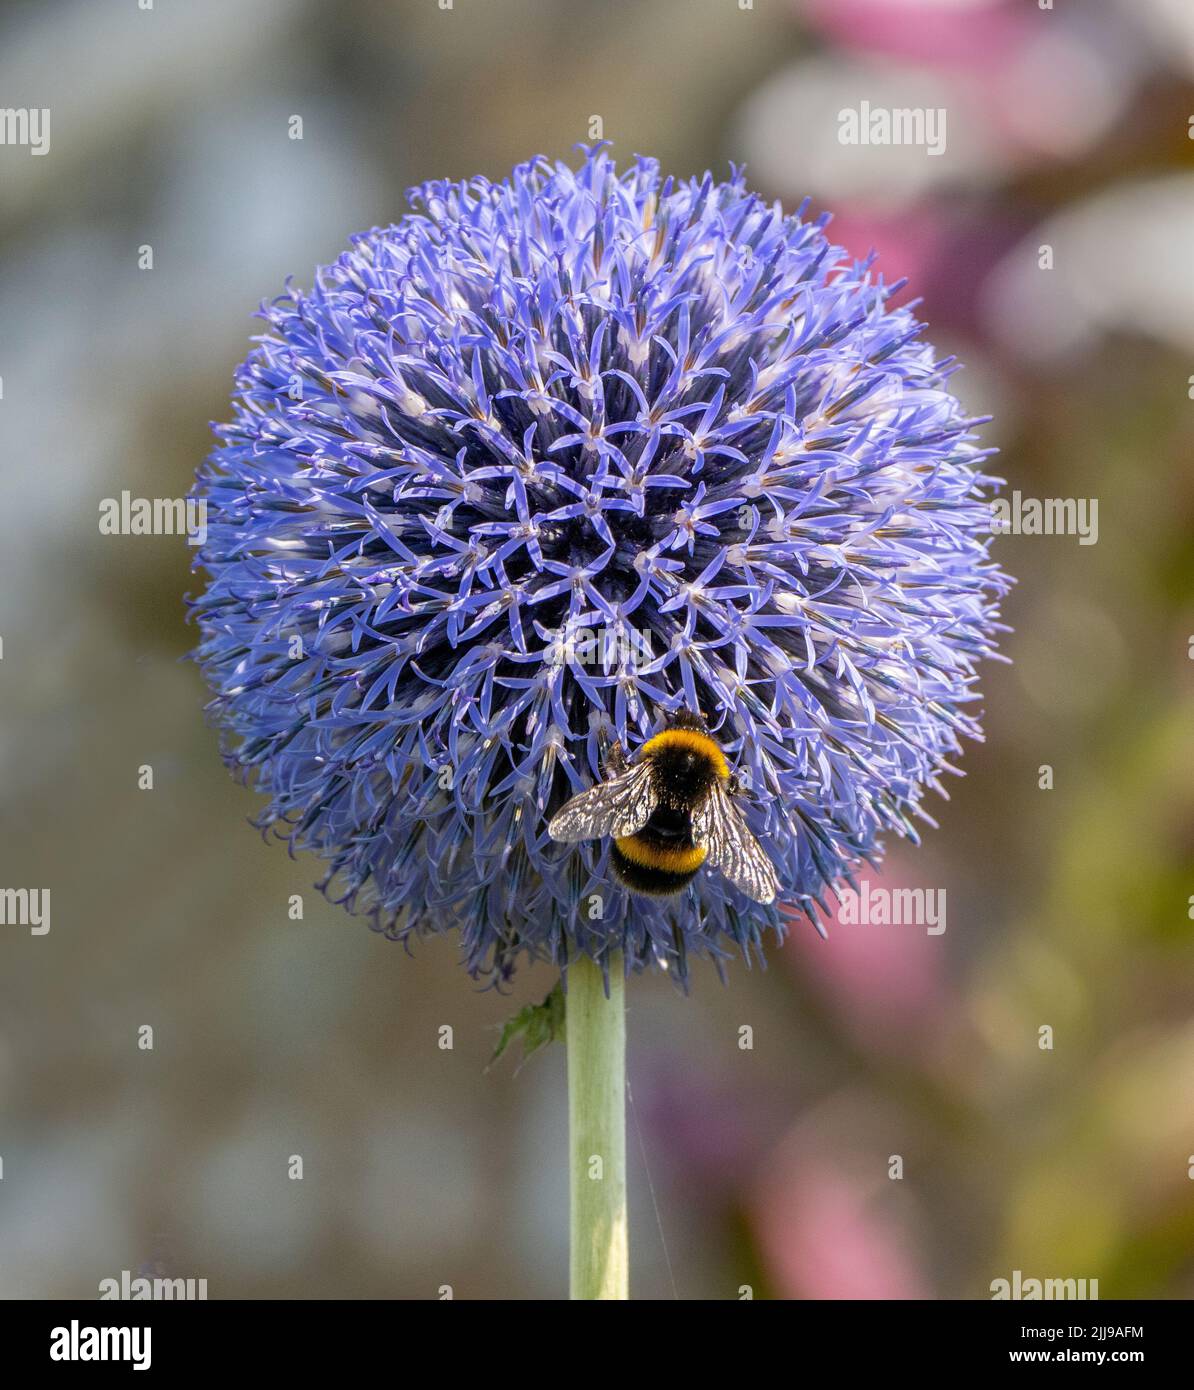 Echinops ritro le Globechardon du Sud et le Bumblebee à queue blanche Bombus lucorum dans un jardin Somerset Royaume-Uni Banque D'Images